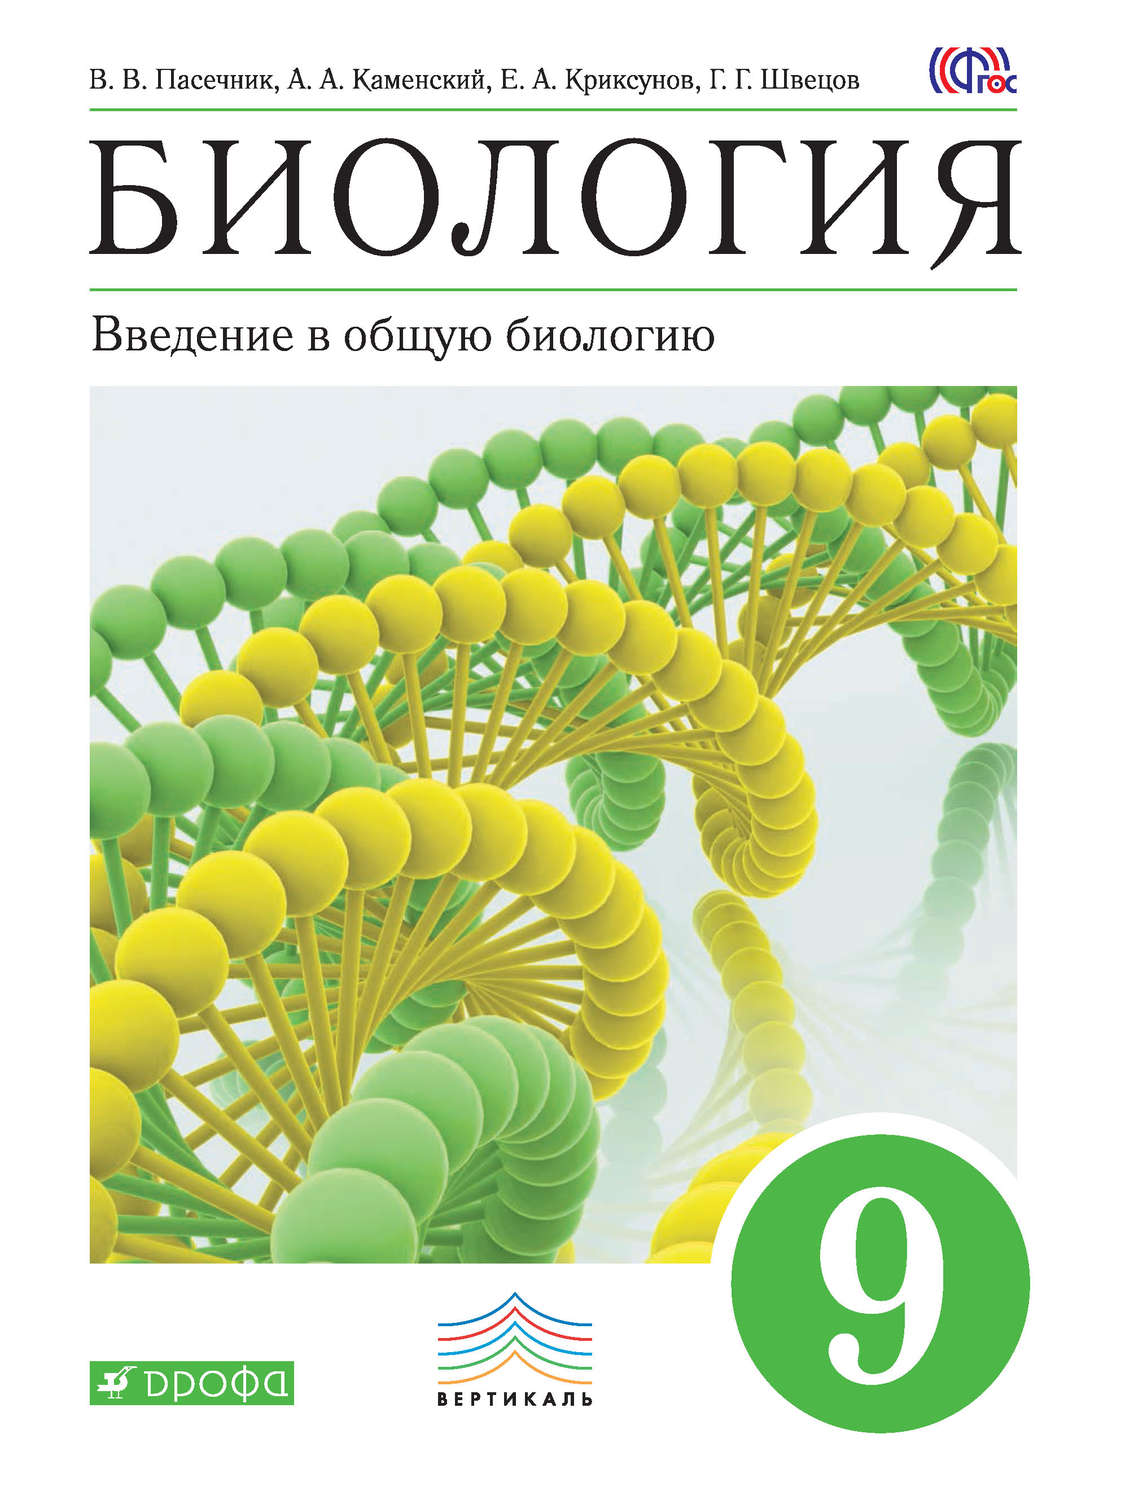 Учебники биологии читать онлайн